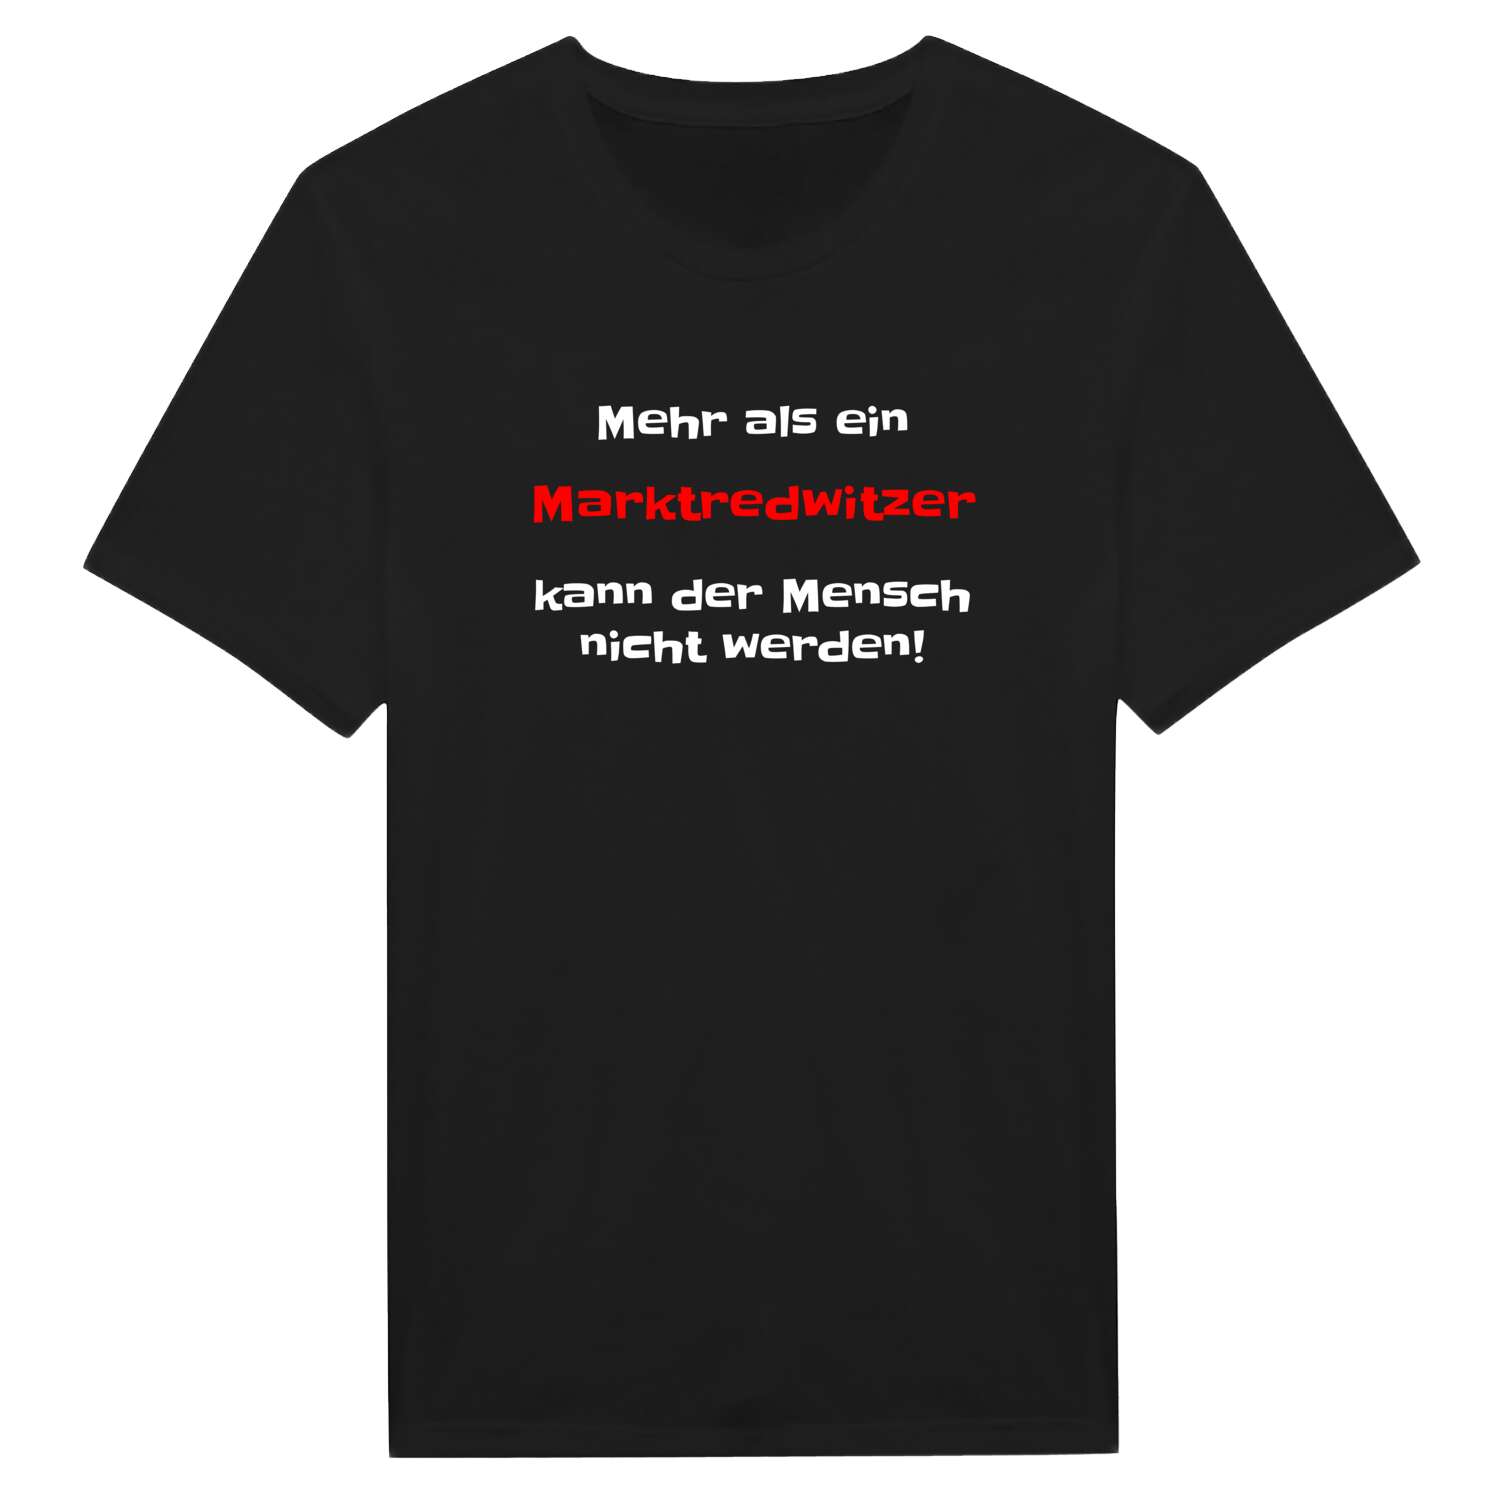 Marktredwitz T-Shirt »Mehr als ein«